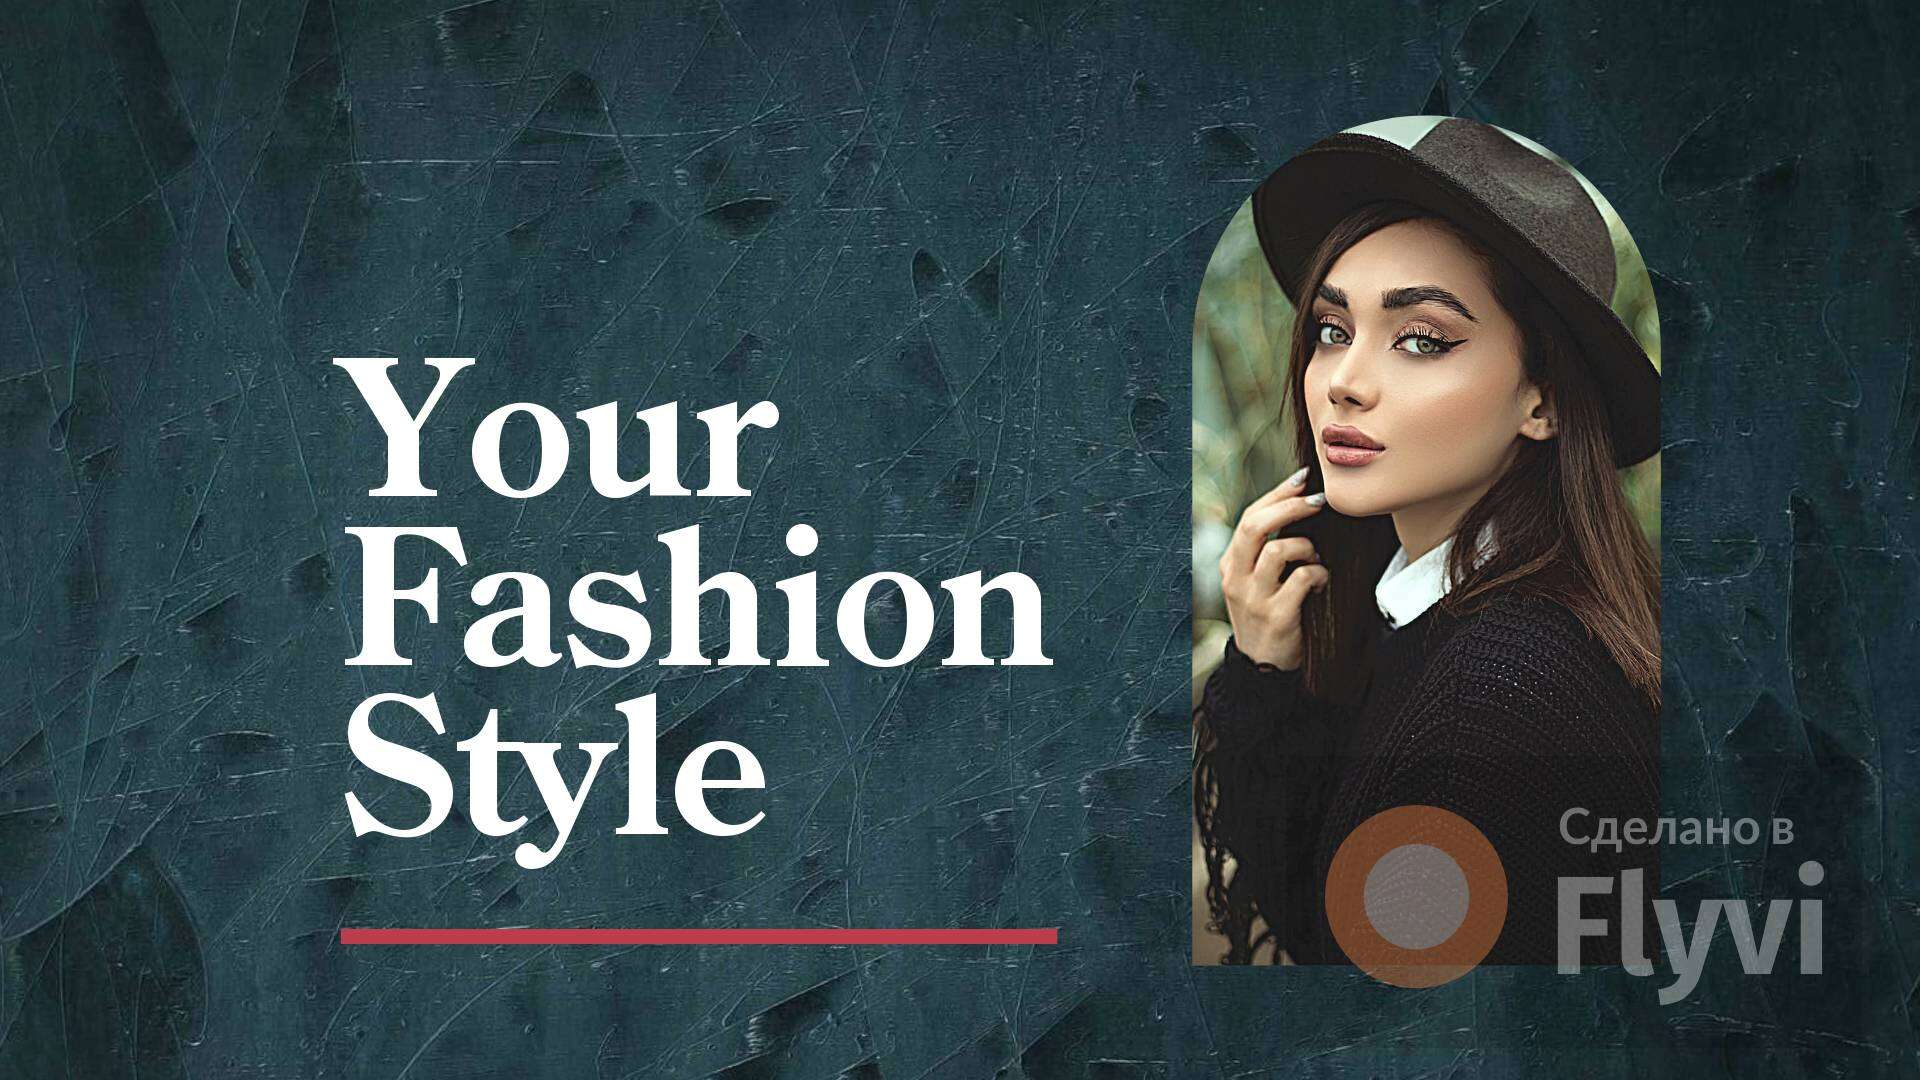 Стильный пост для модного блога в vk в темно-бирюзовом цвете с портретом девушки в арке с броским заголовком